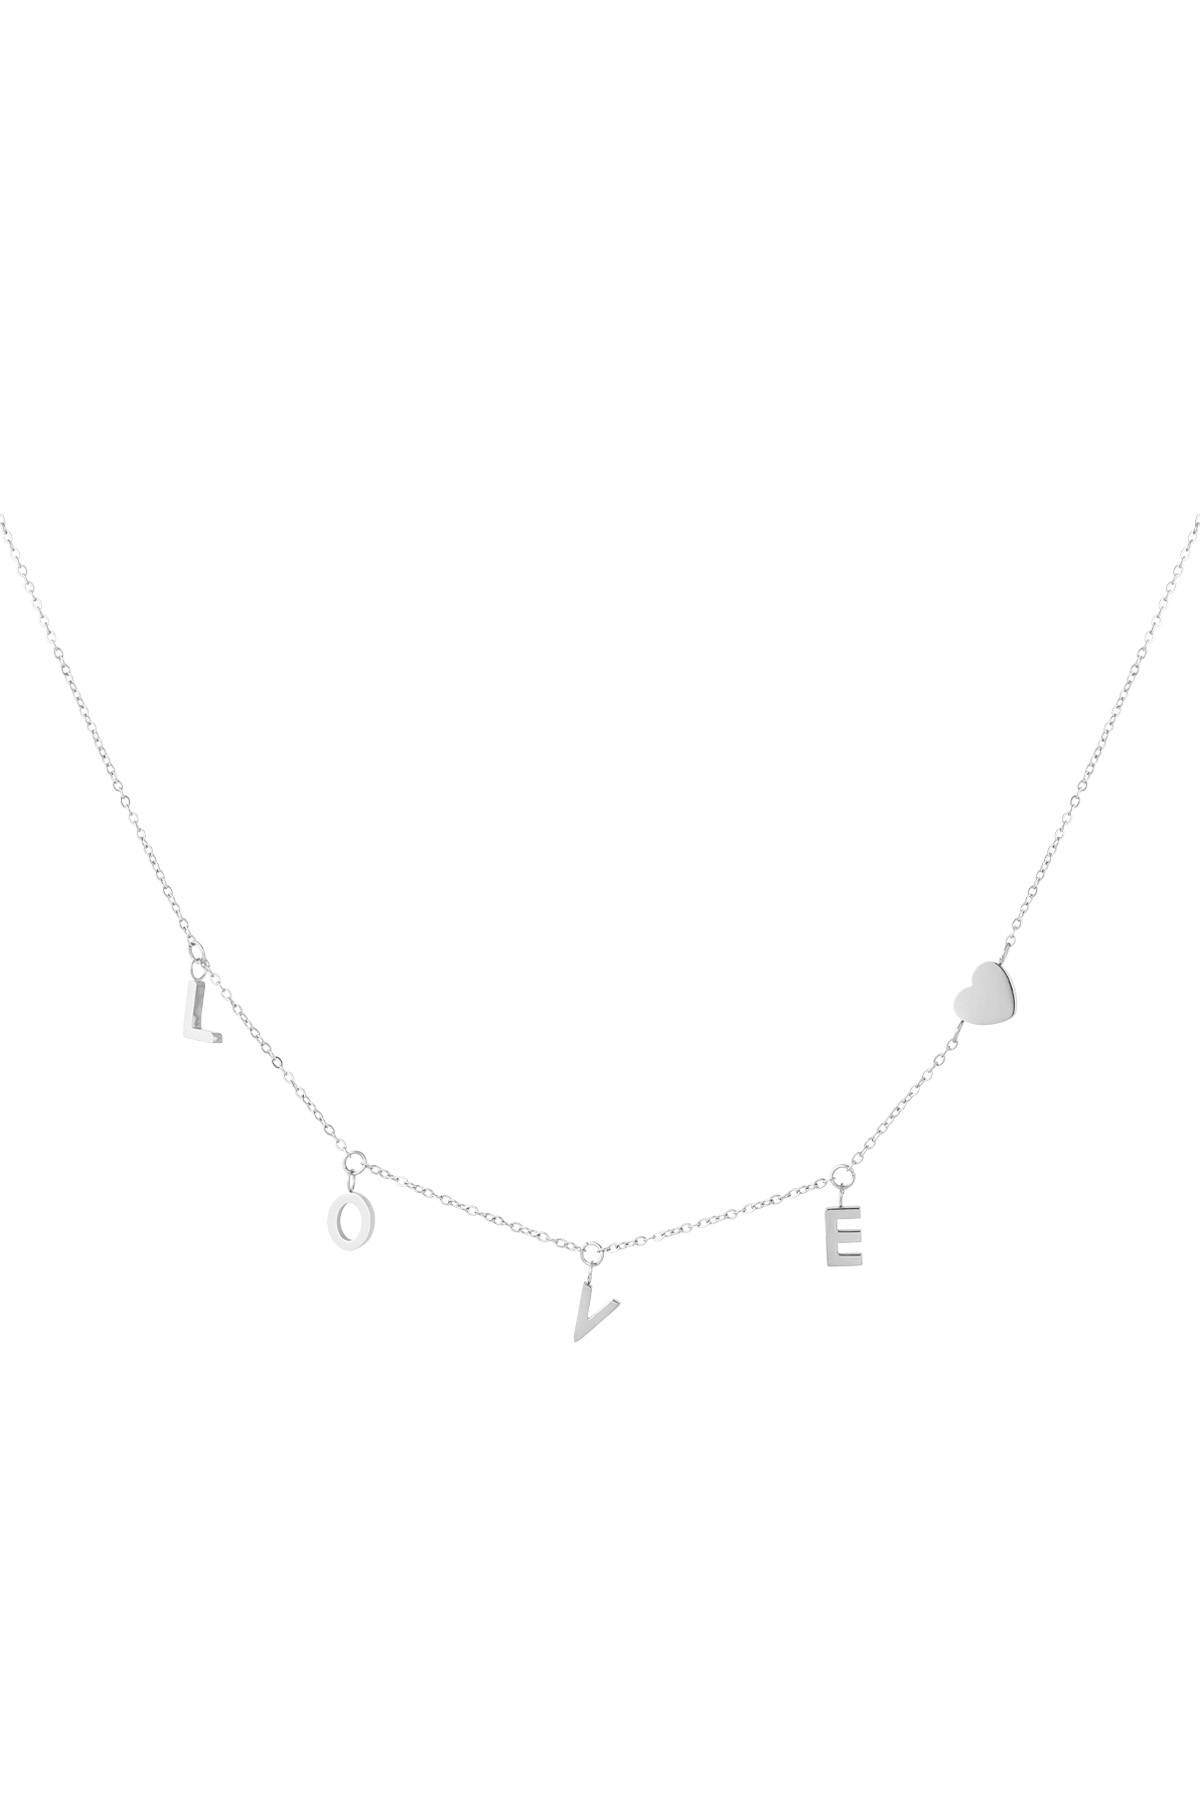 Halskette Liebhaberwelt - Silber